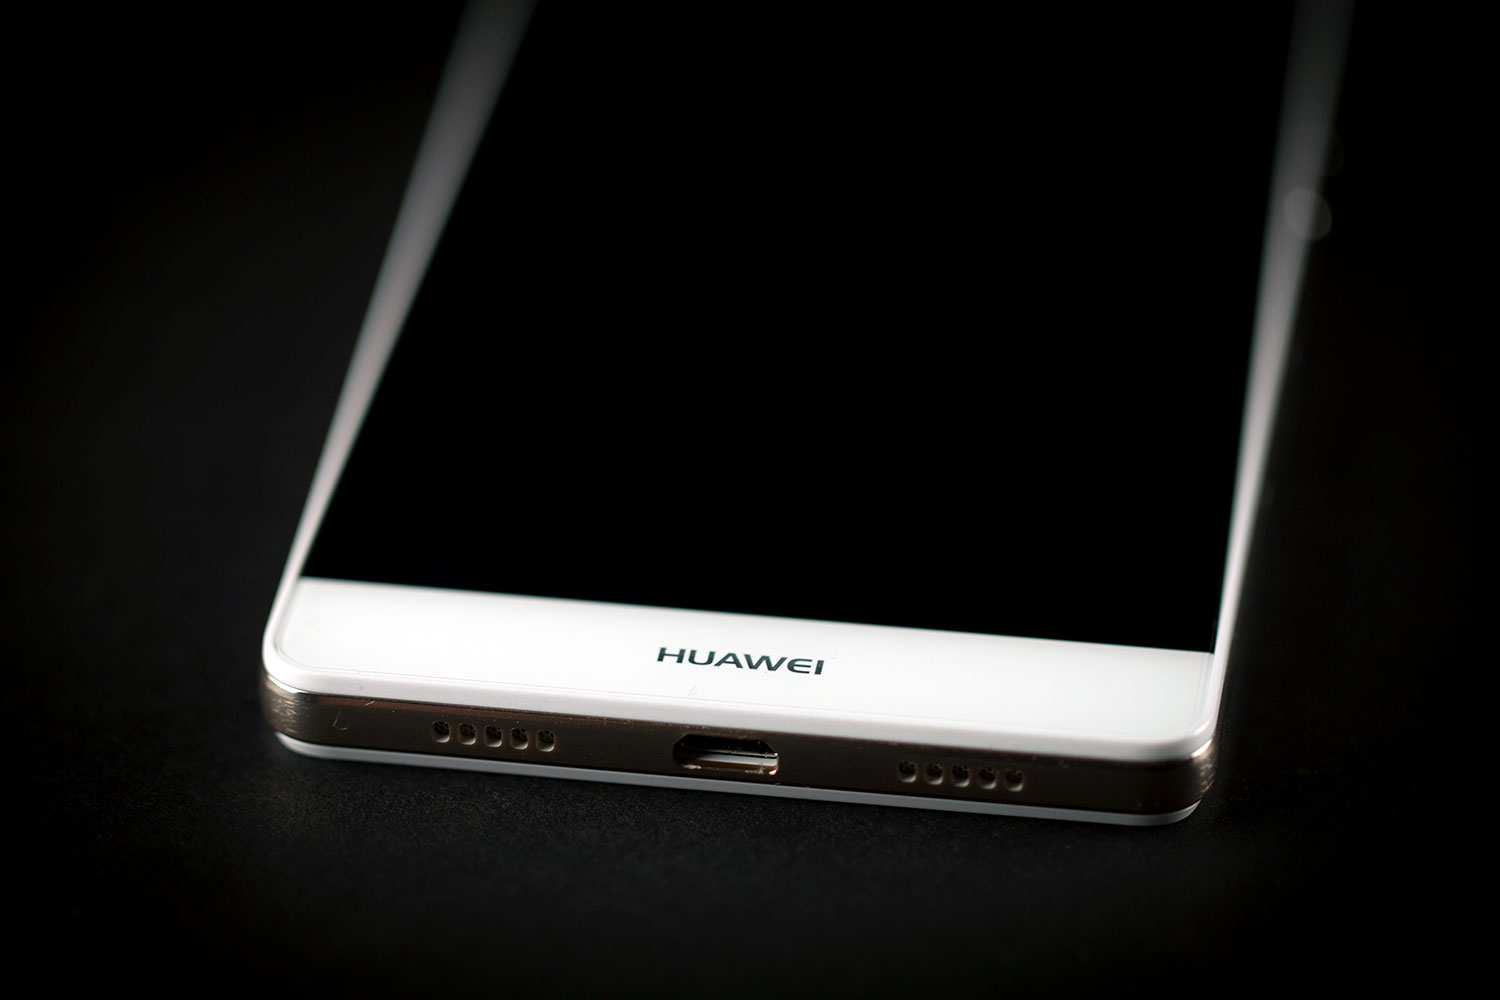 muis Basistheorie voorzetsel Huawei P8 lite Review | Digital Trends